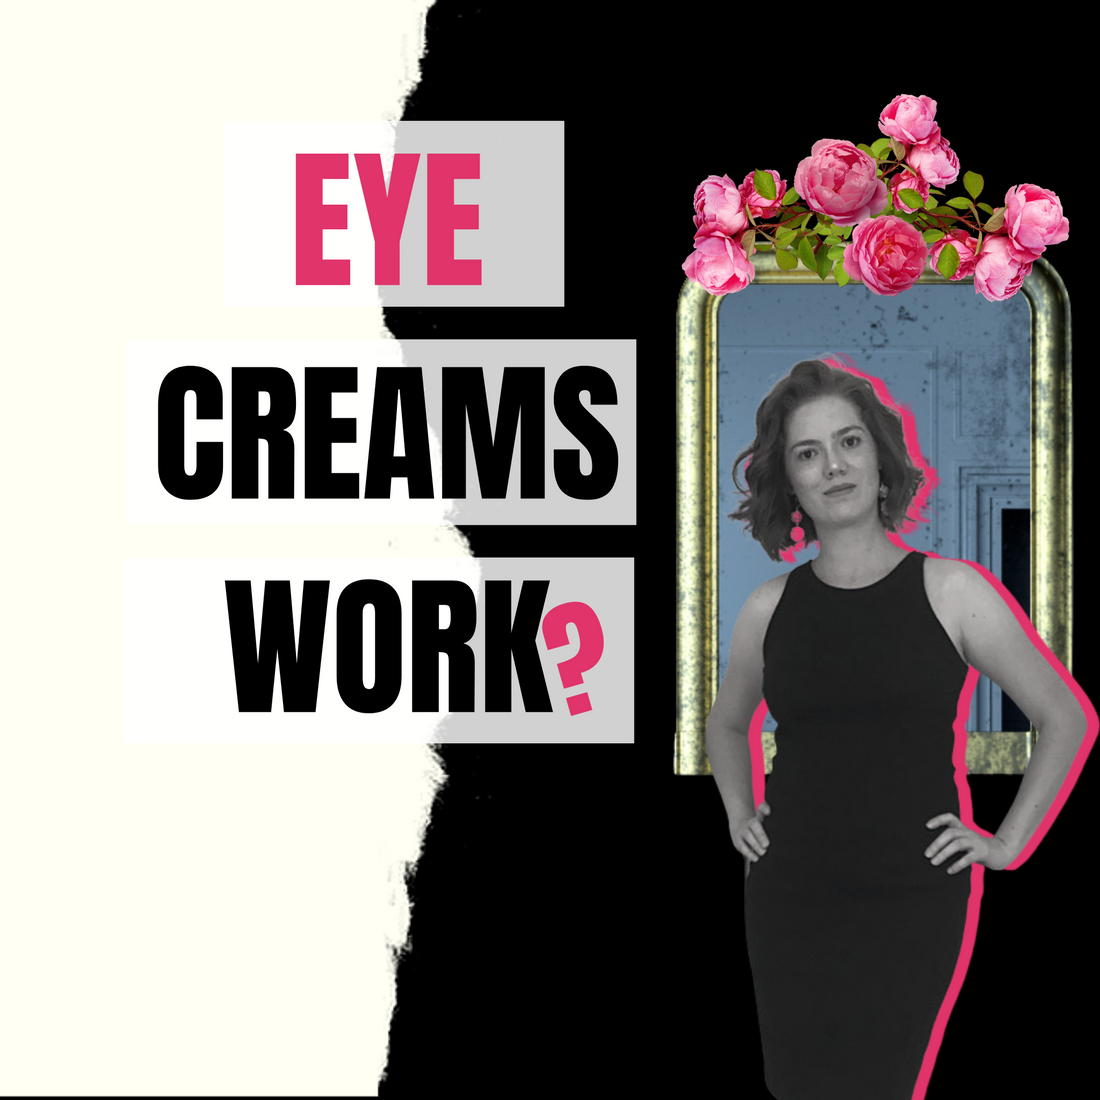 Do eye creams really work?